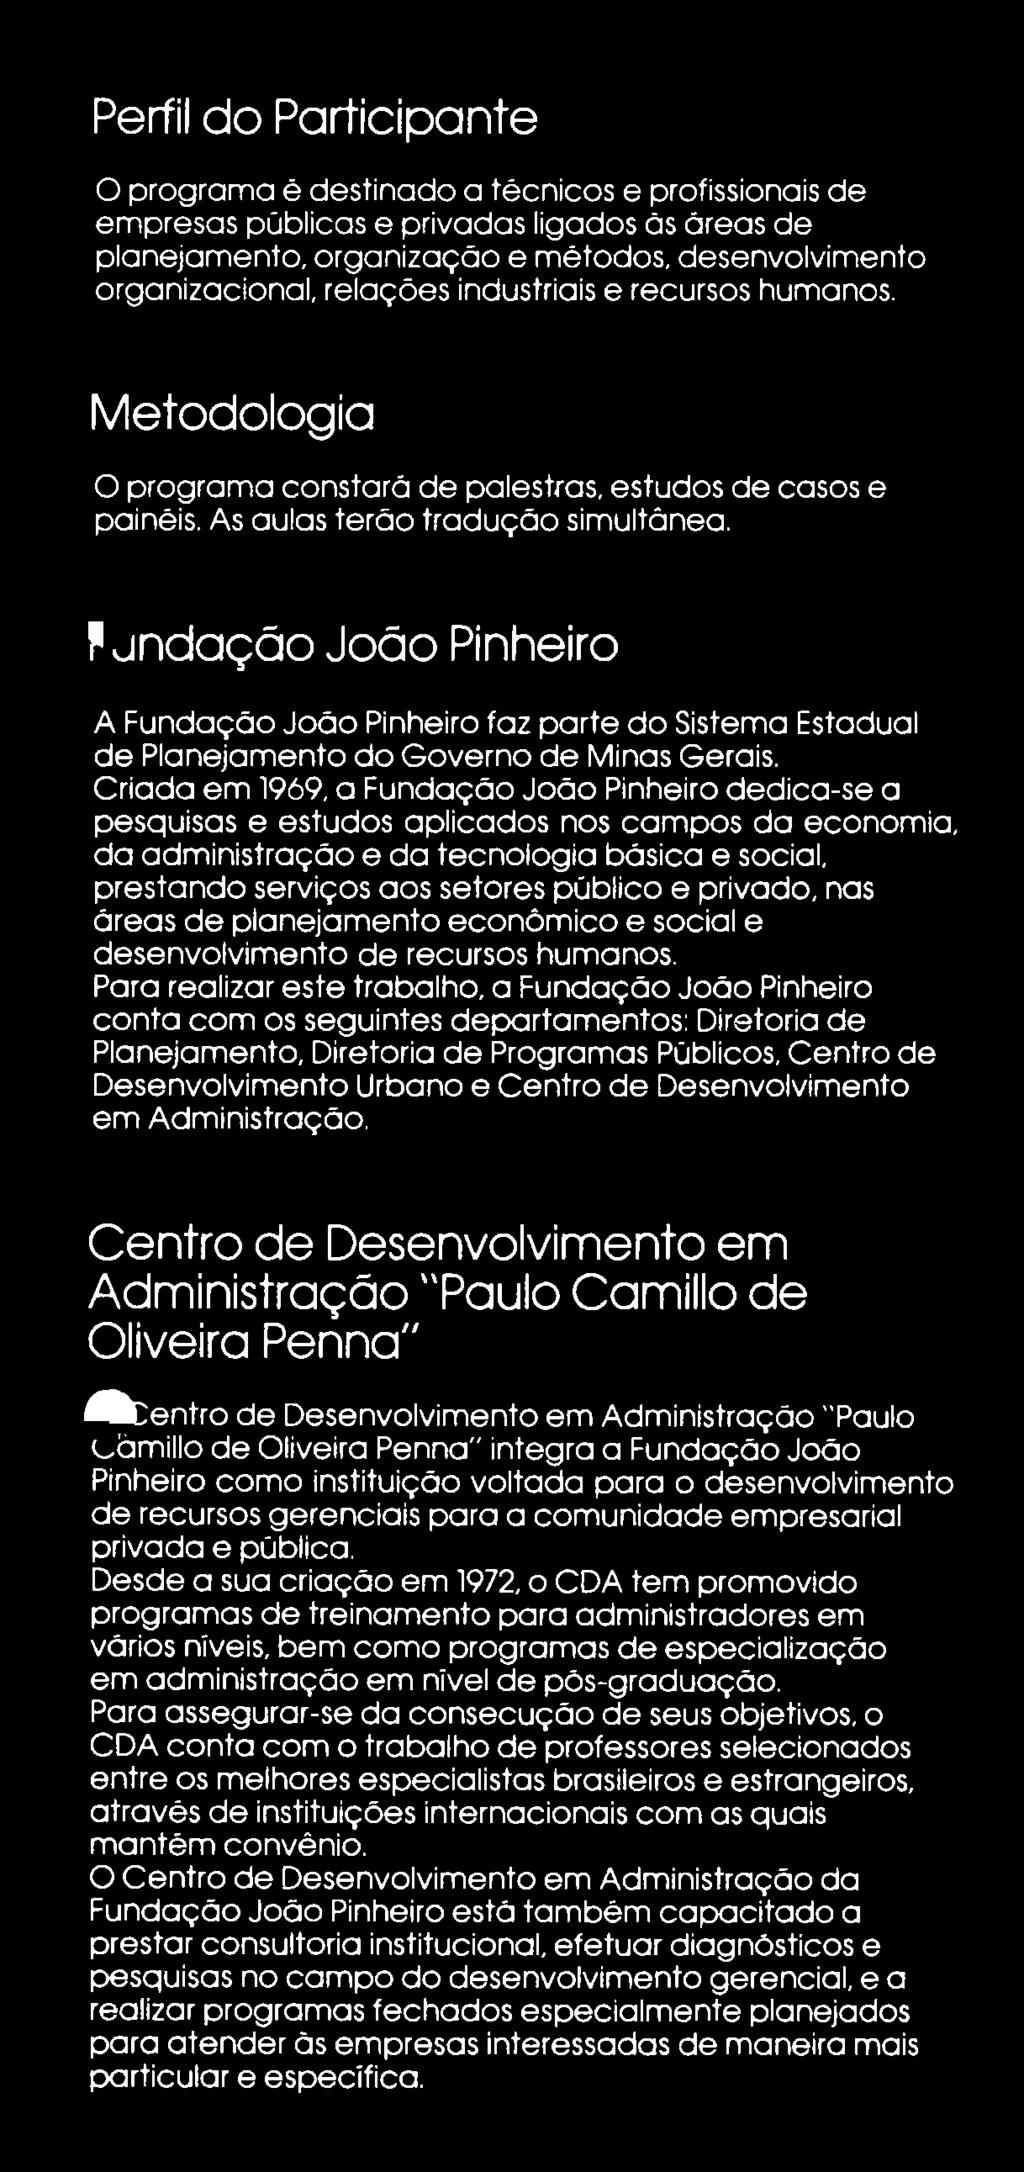 f jnd a ç ã o João Pinheiro A Fundação João Pinheiro faz parte do Sistema Estadual de Planejamento do Governo de Minas Gerais.